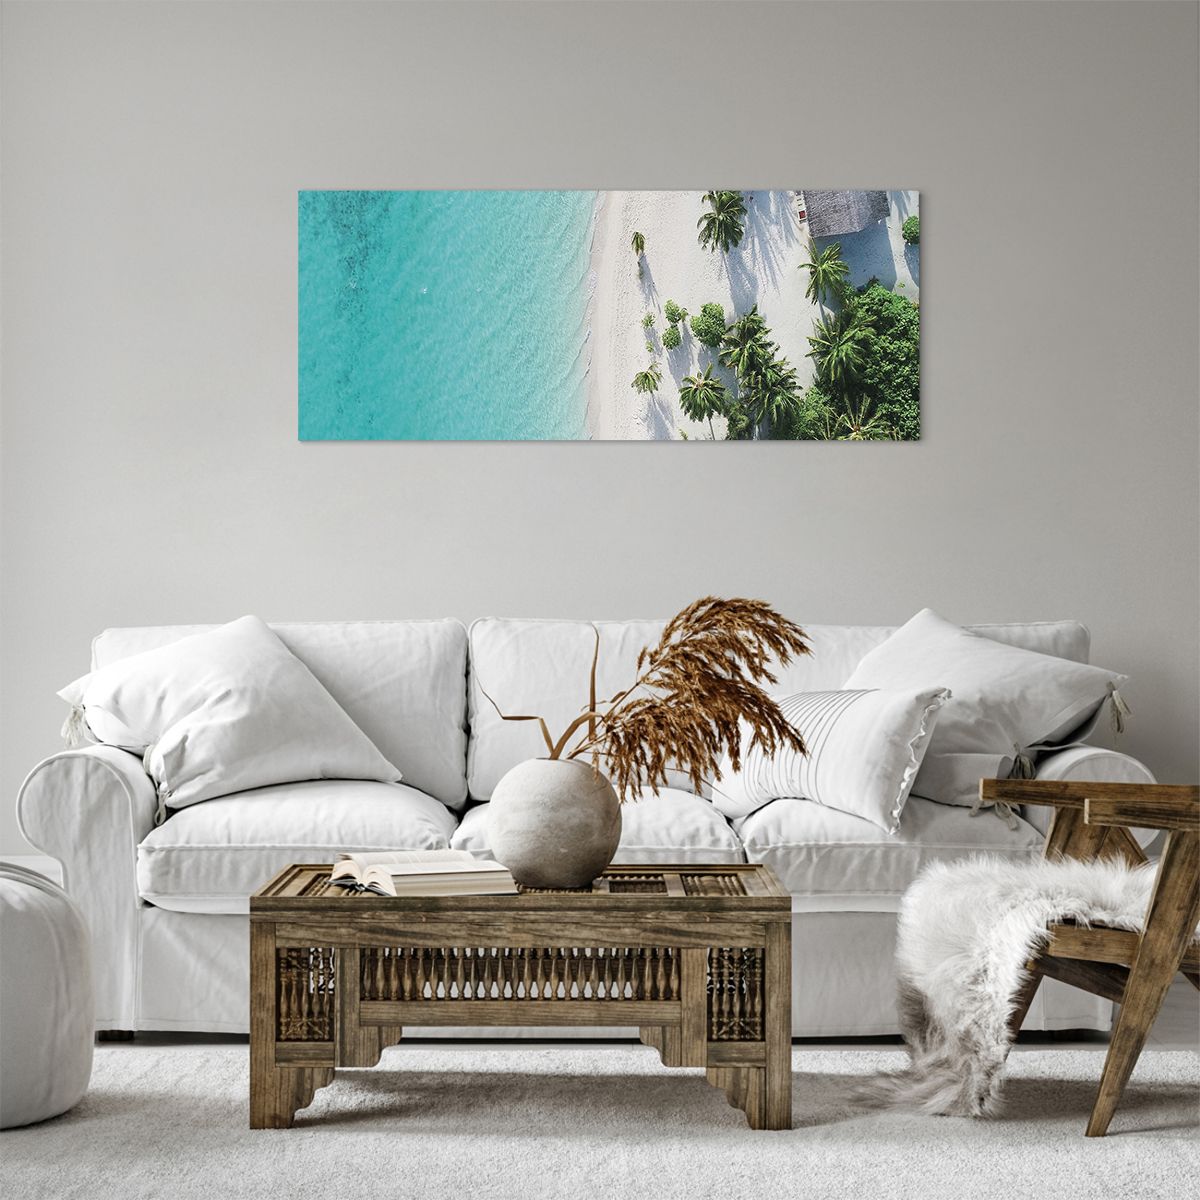 Obrazy na płótnie Krajobraz, Obrazy na płótnie Rajska Plaża, Obrazy na płótnie Malediwy, Obrazy na płótnie Morze, Obrazy na płótnie Podróże